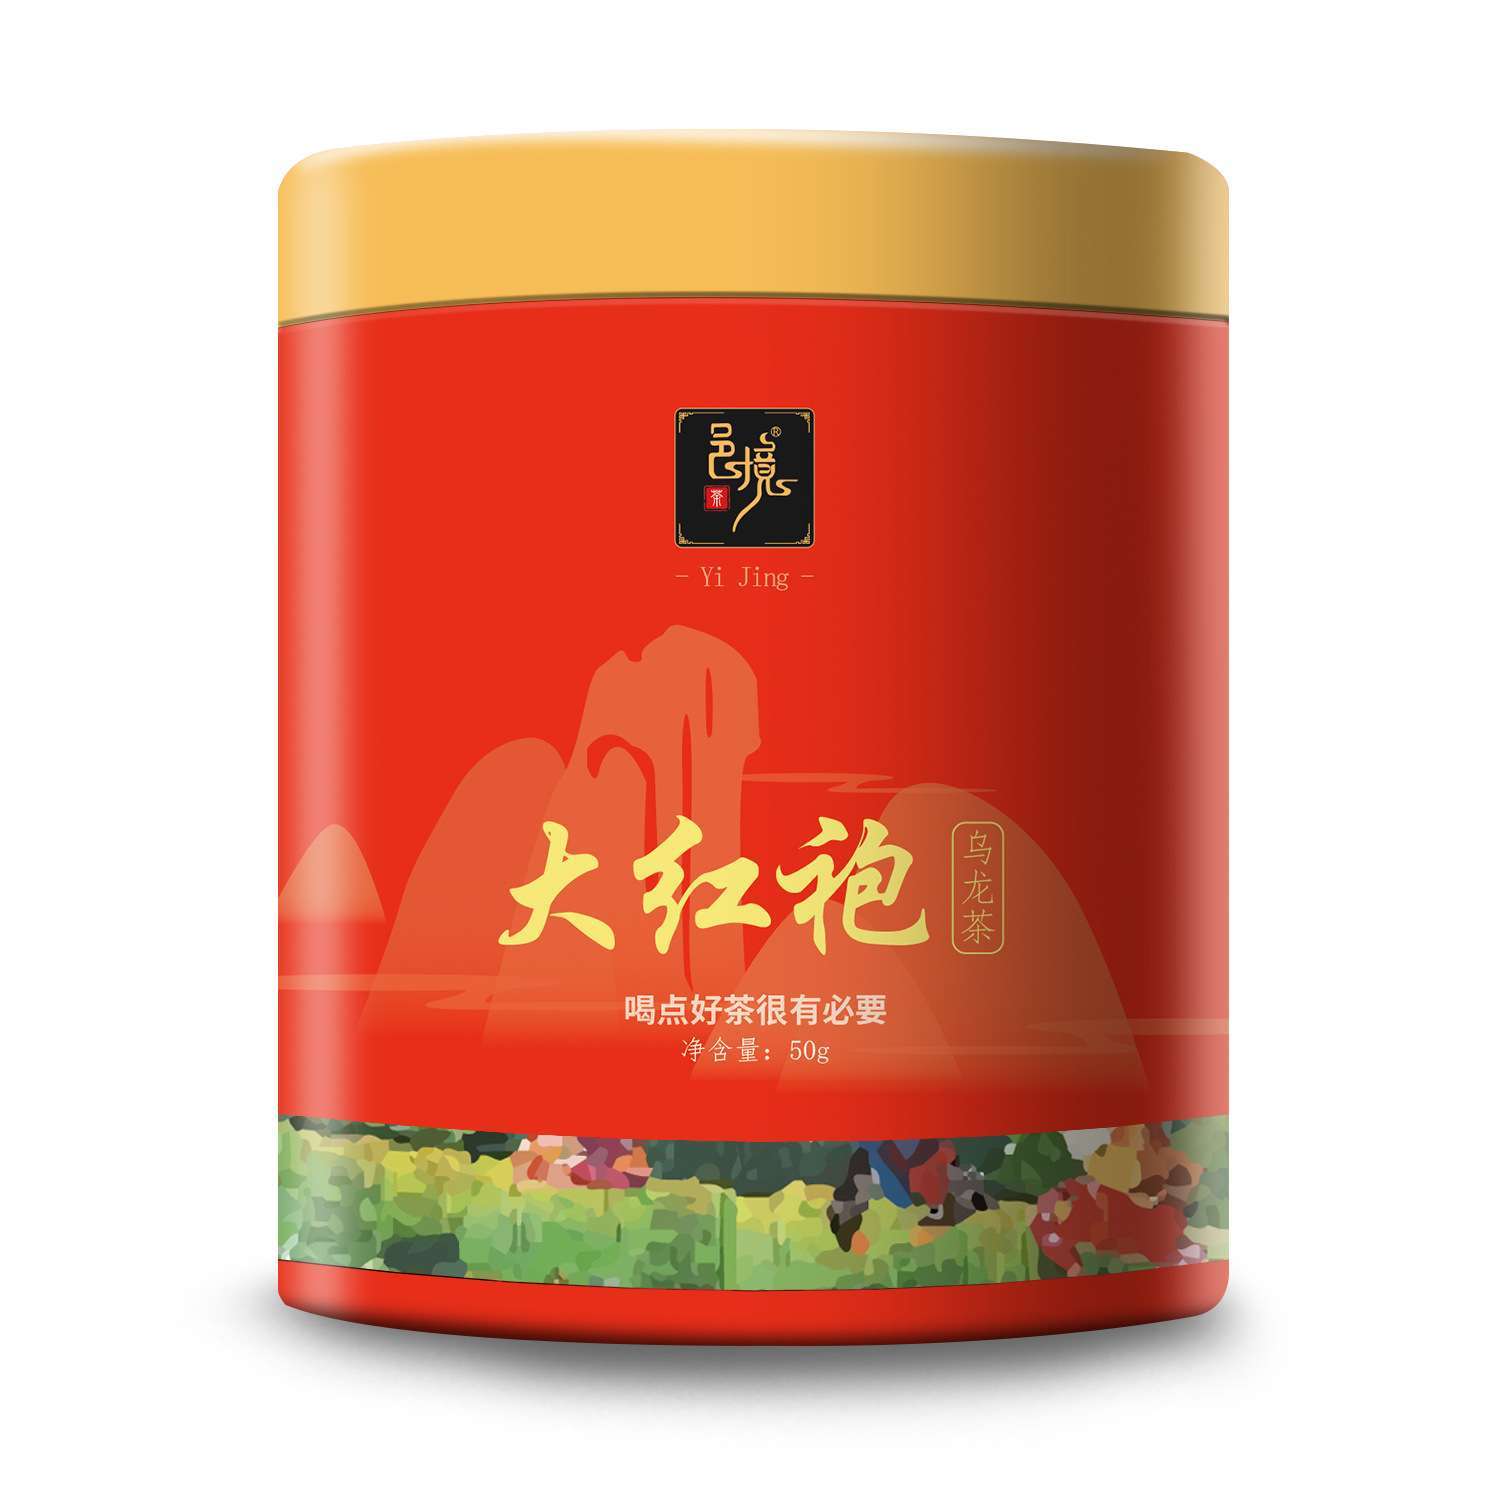 品牌红茶大红袍圆罐装浓郁耐泡新茶发货小卖铺茶叶